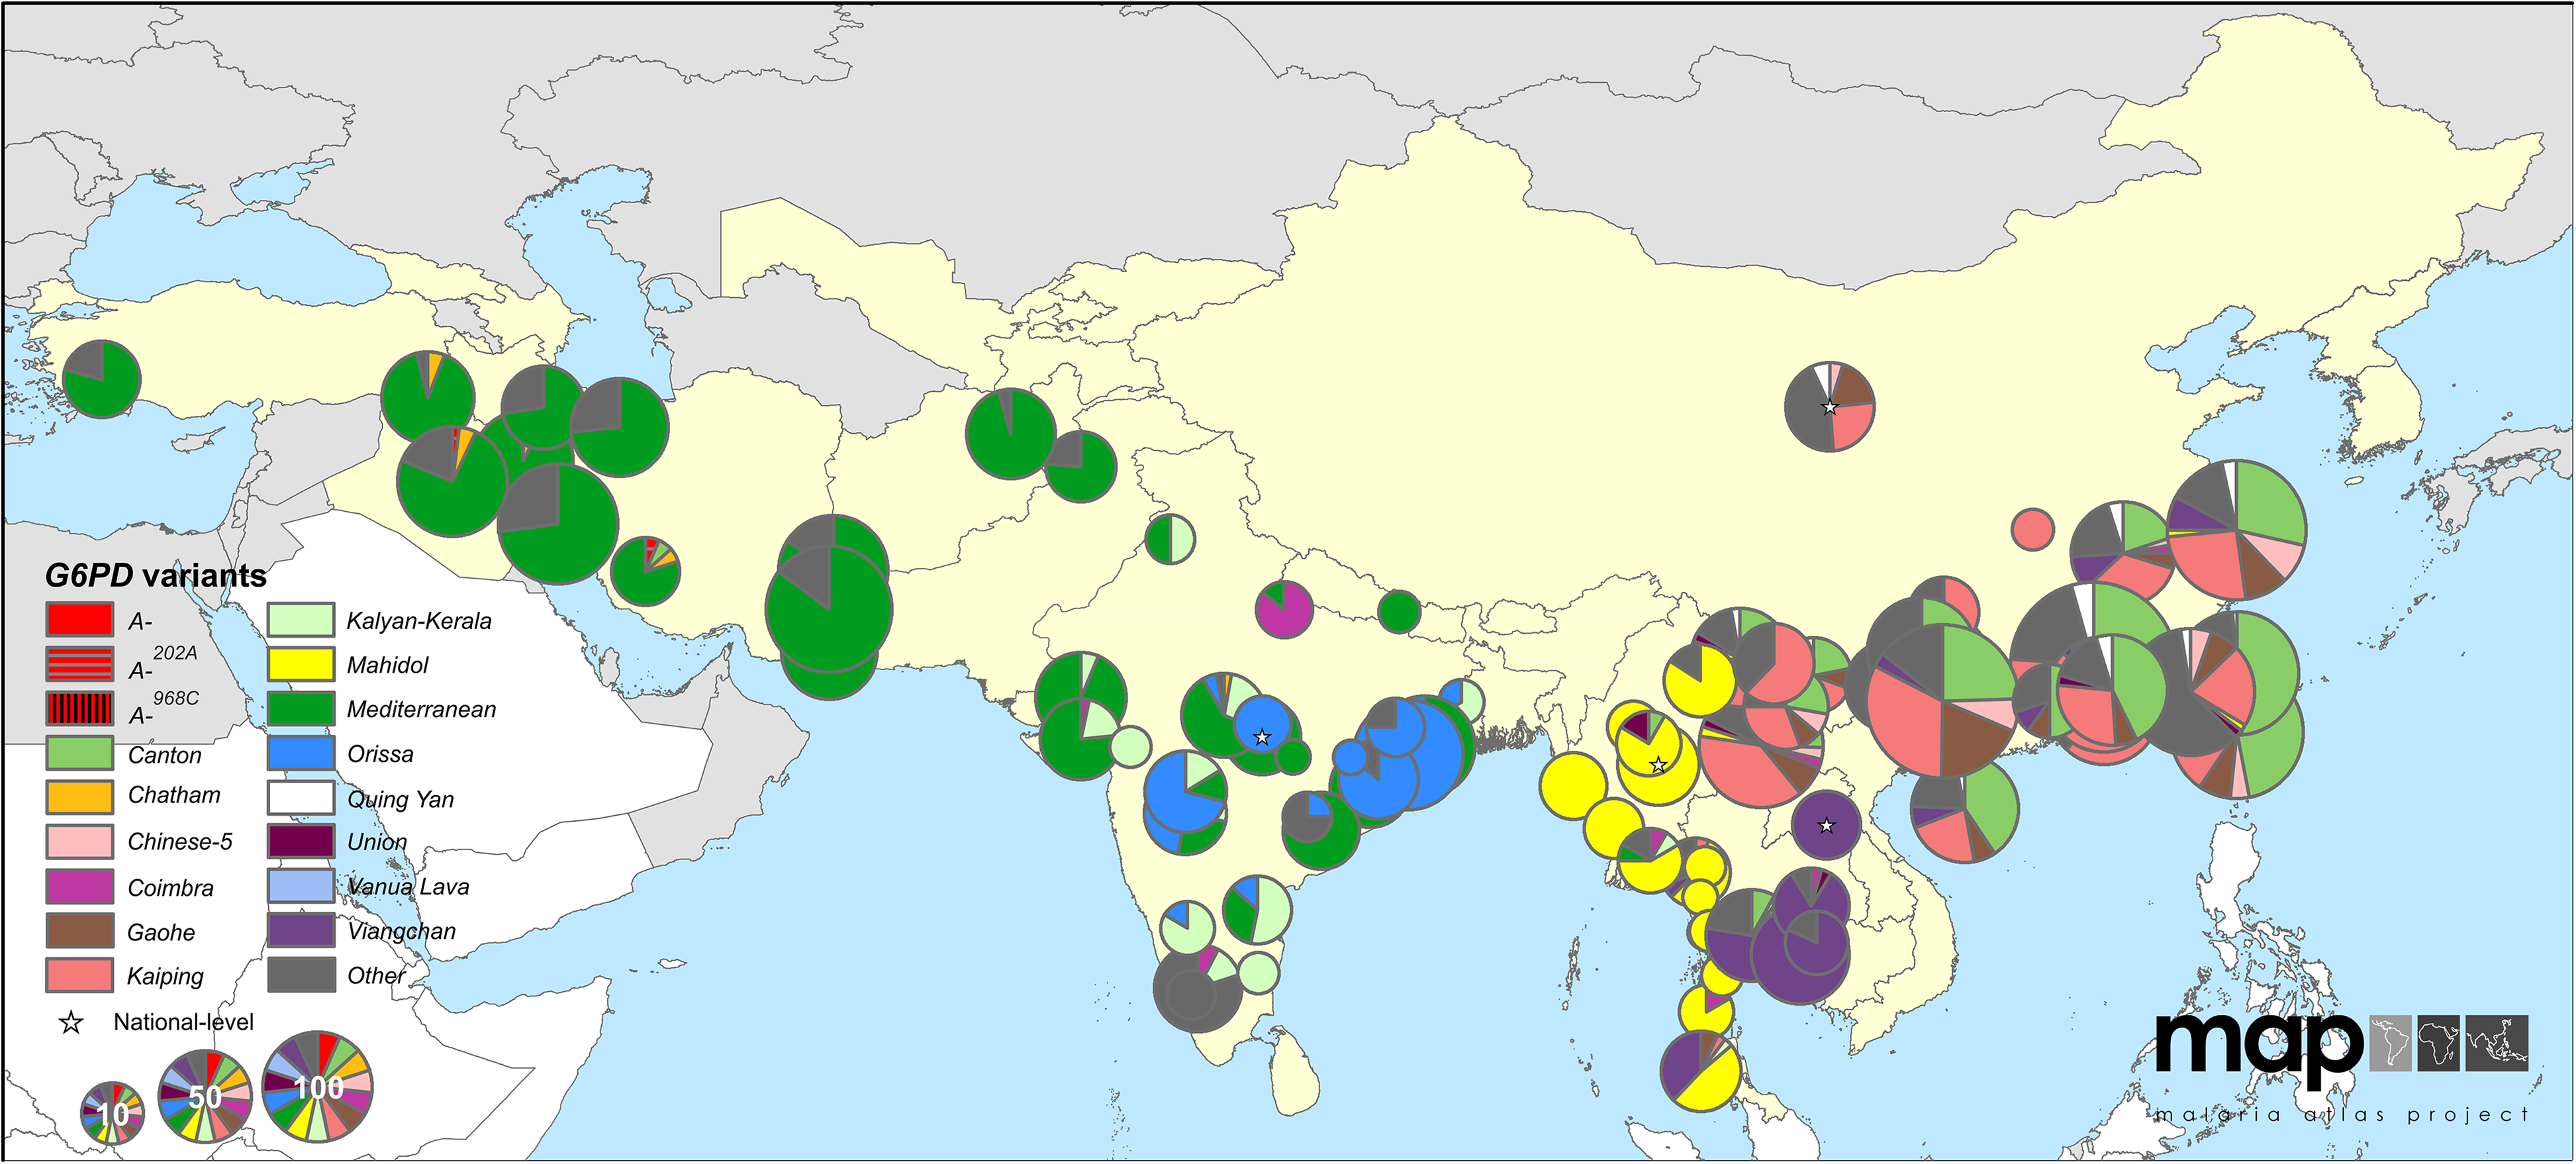 Mapa de frecuencias alélicas por deficiencia de G6PD en Asia. El gráfico circular muestra la frecuencia de los alelos por deficiencia de G6PD. El tamaño del gráfico circular indica el número de individuos muestreados con deficiencia de G6PD. Los países con malaria endémica son de color amarillo. Figura de,.